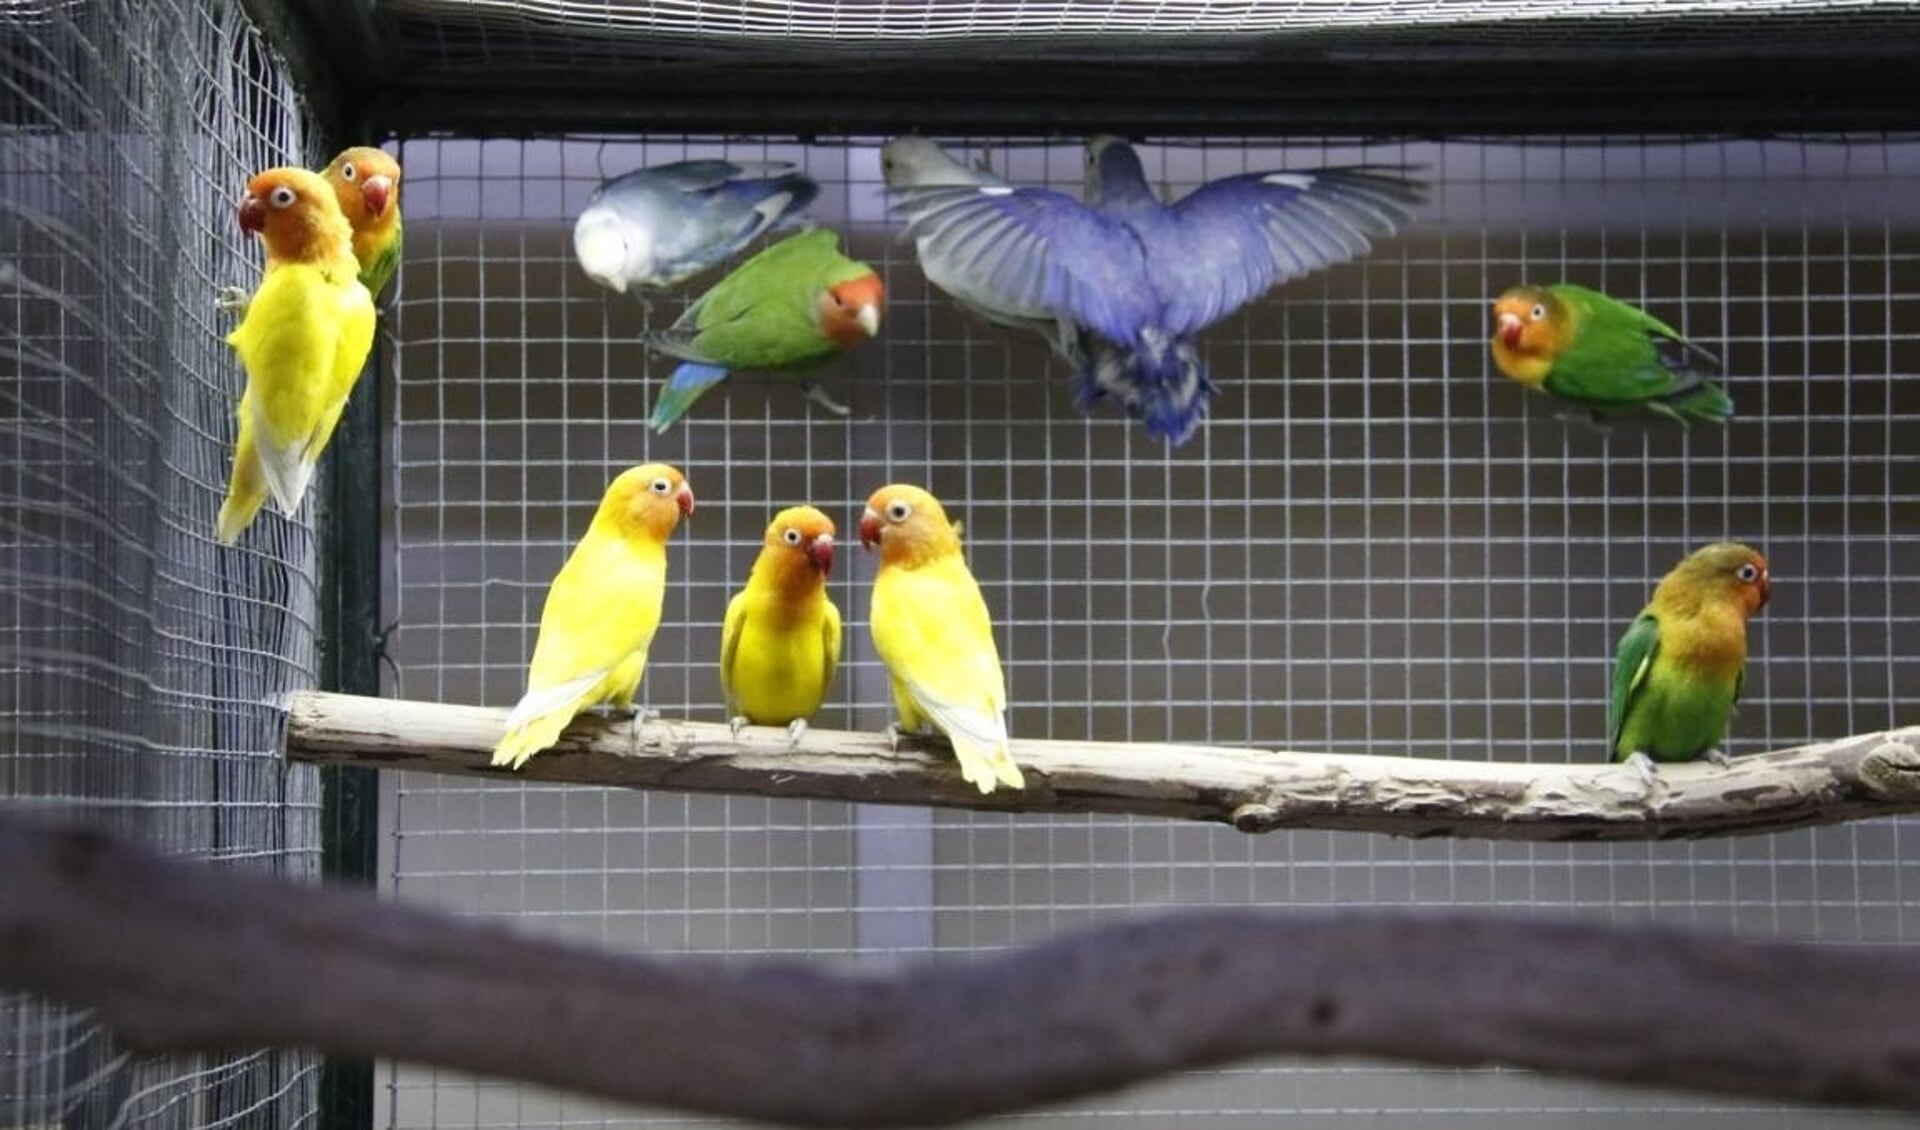 Het houden van kooi- en volièrevogels is een mooie hobby, vinden de leden van Vogelvereniging Surhuisterveen e.o. "Een prima hobby in coronatijd, ook geschikt voor jongeren," vindt voorzitter Henk Postma.